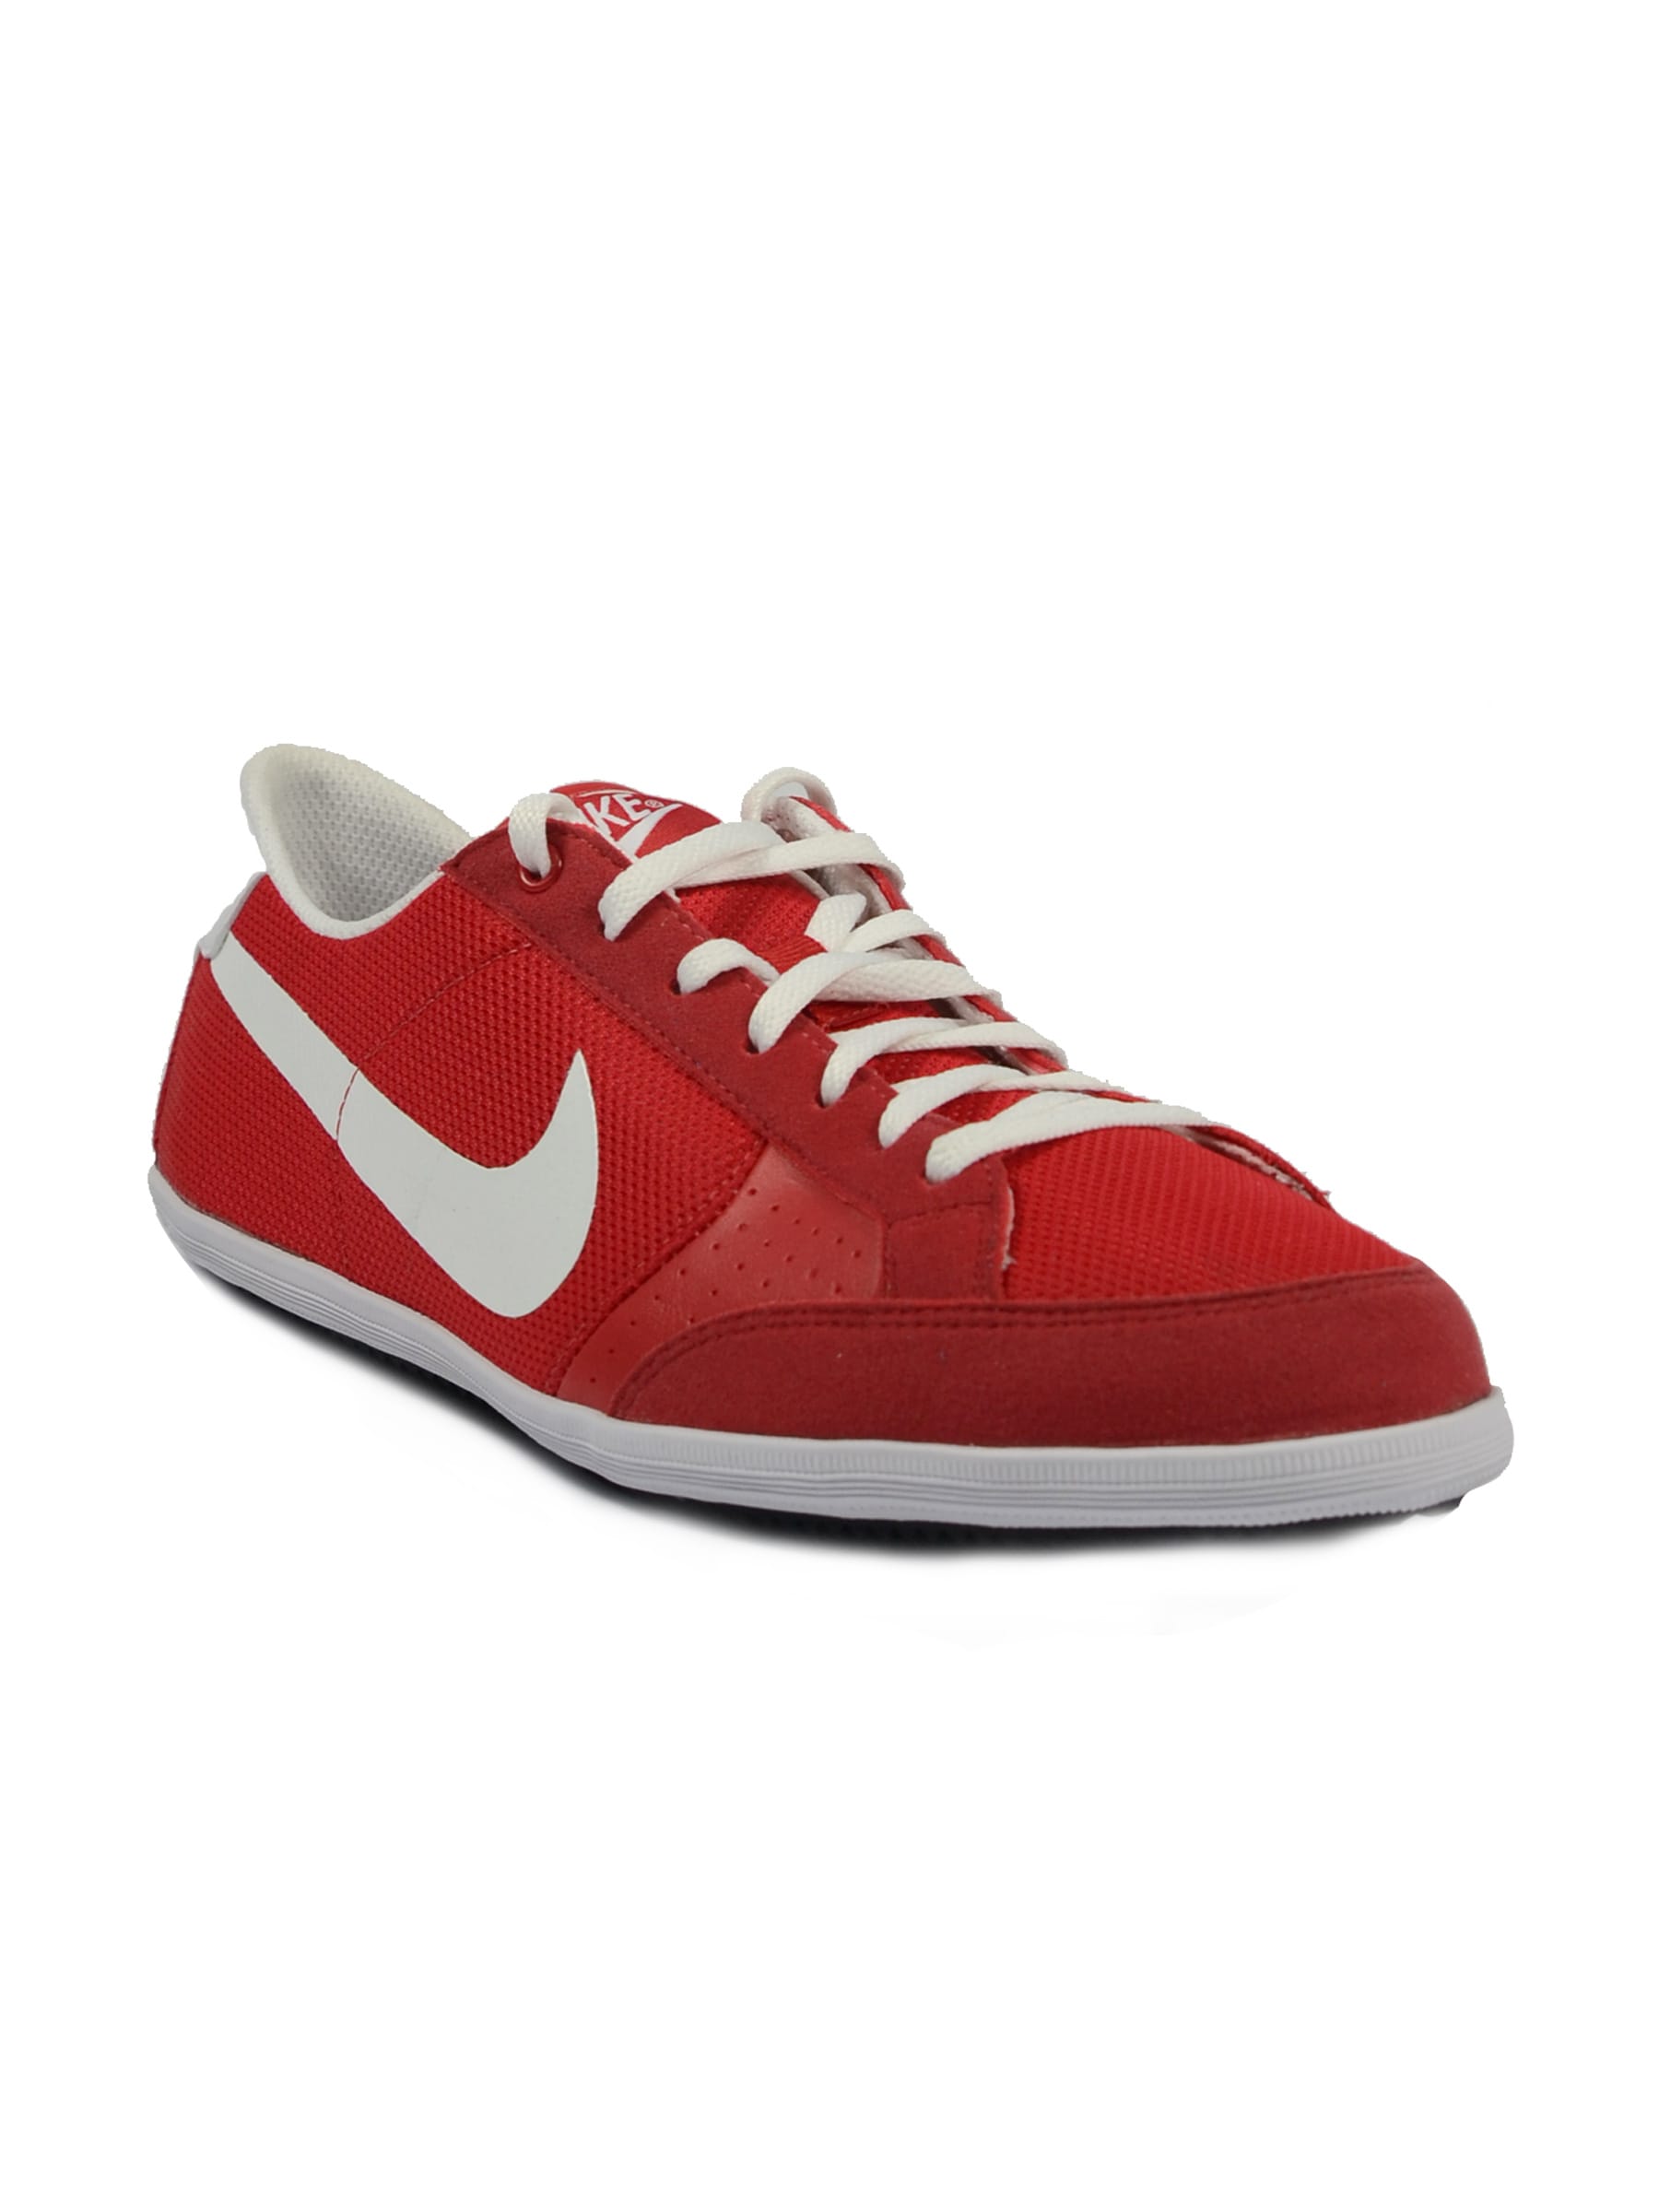 Nike Men's Flyclave Red White Shoe